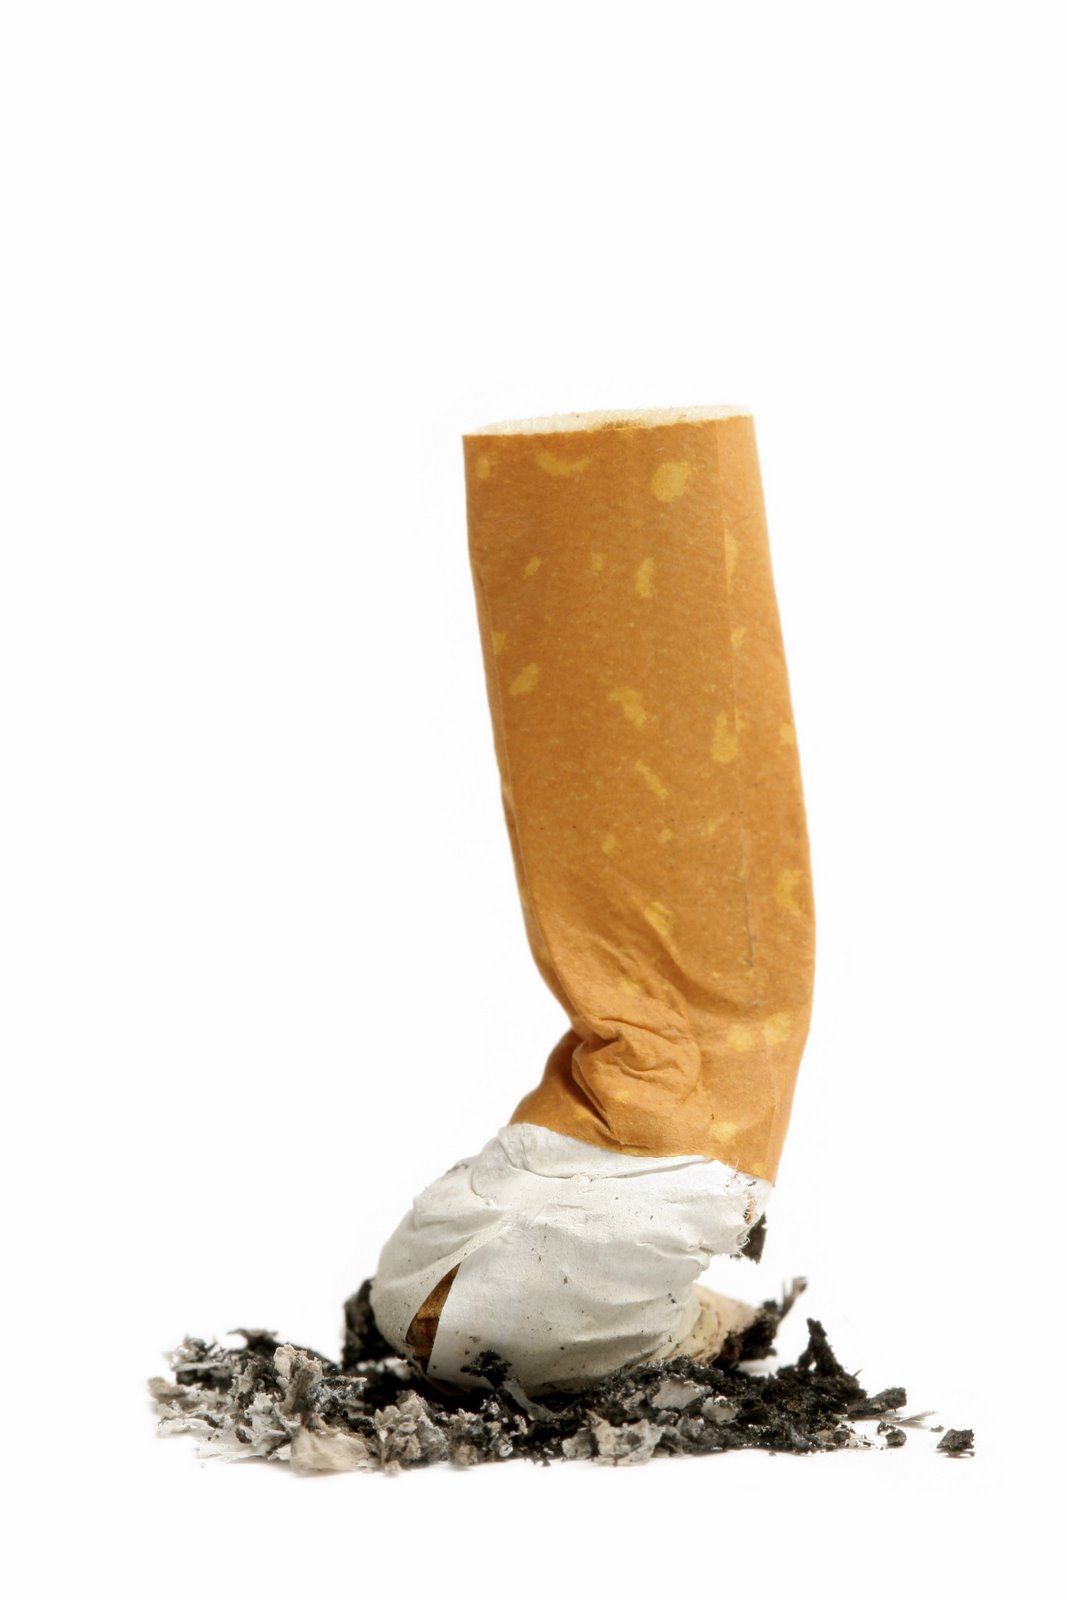 400 مليون دينار خسائر الاقتصاد الأردني جراء التدخين 